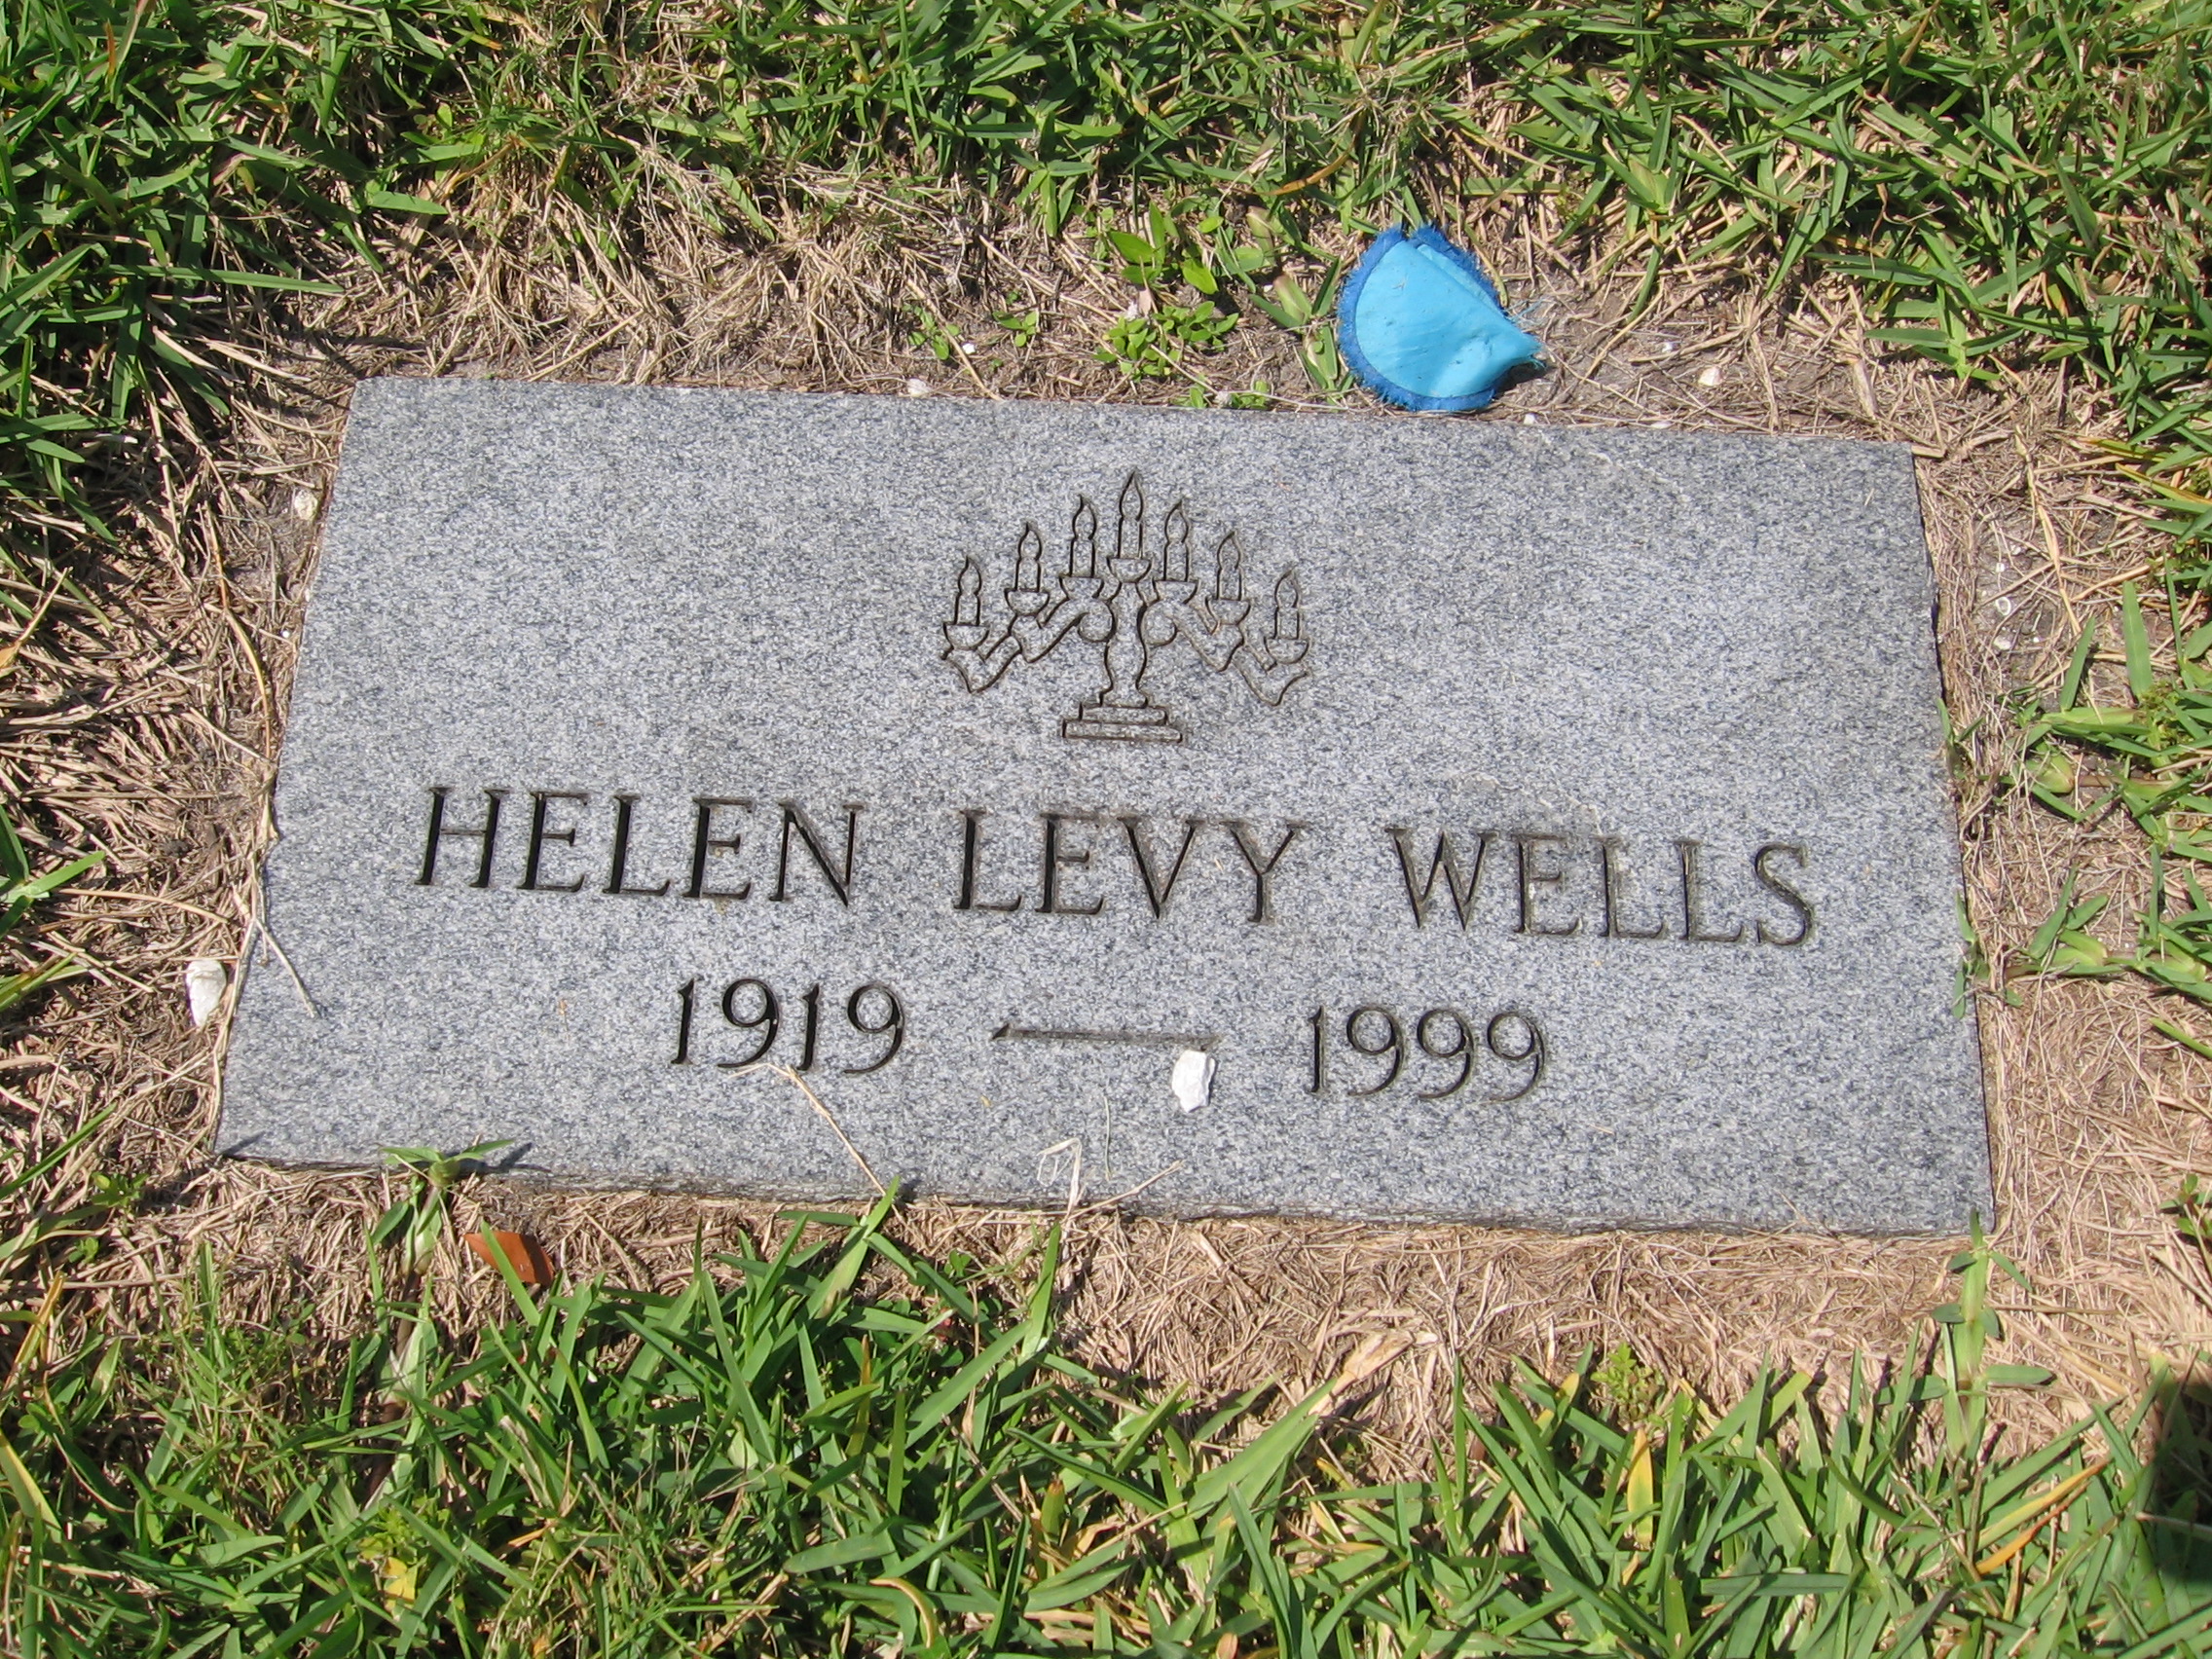 Helen Levy Wells